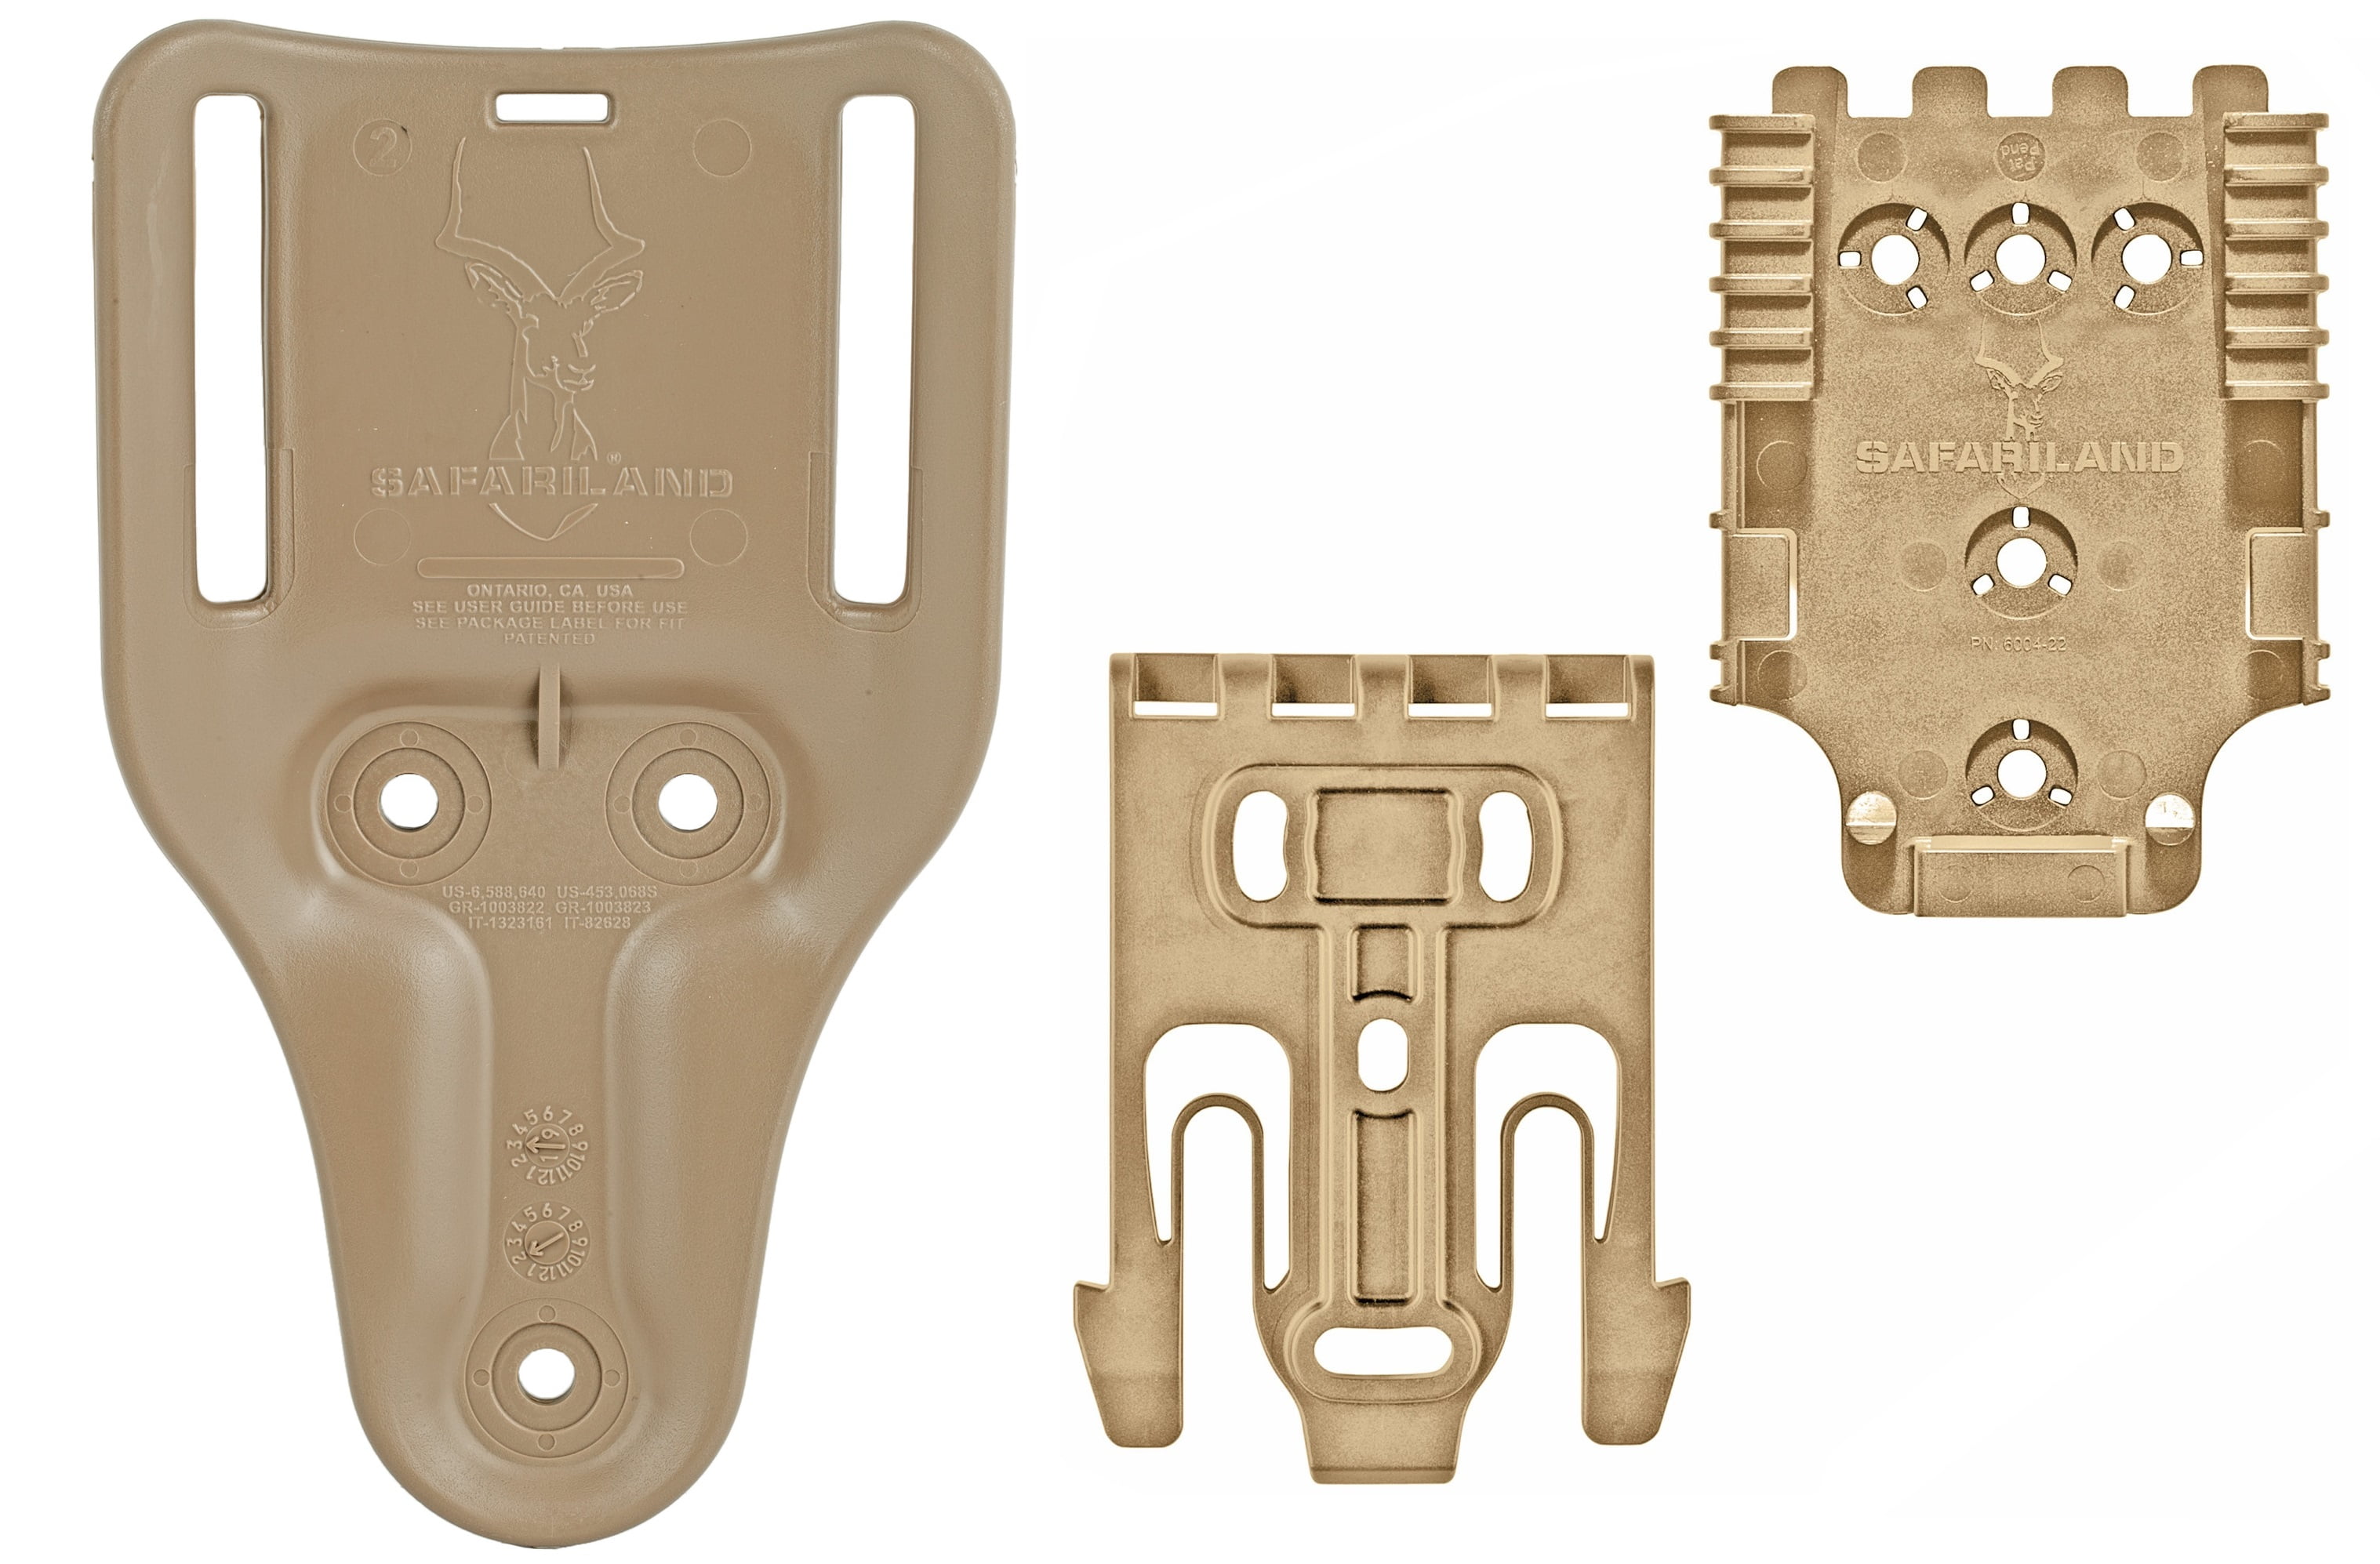  9006524 Safariland Equipment Locking System Kit : Gun